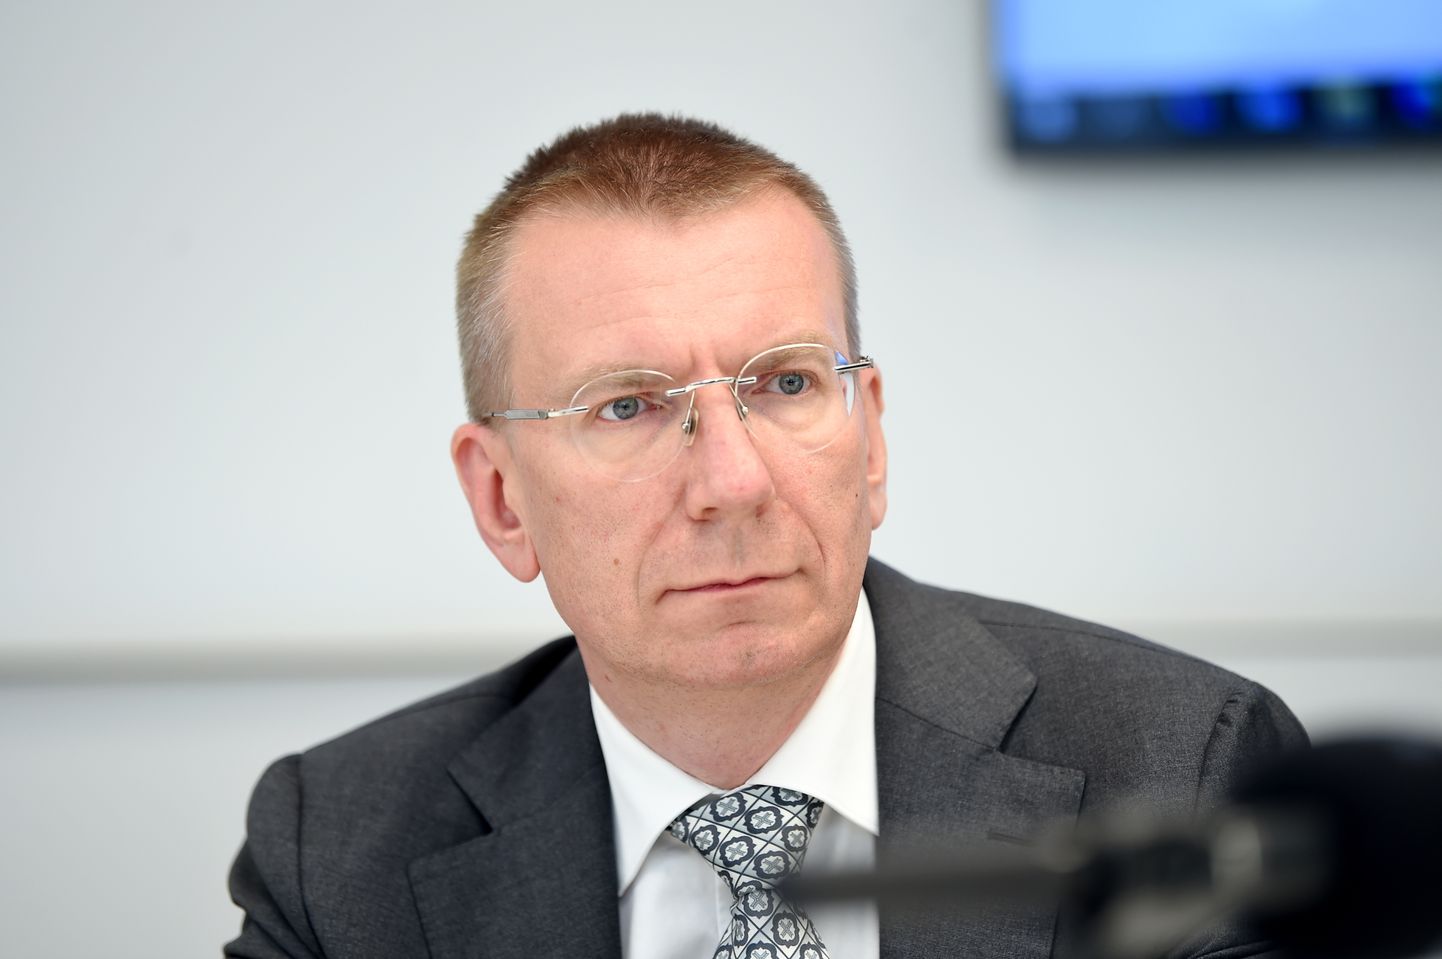 Министр иностранных дел Эдгар Ринкевич